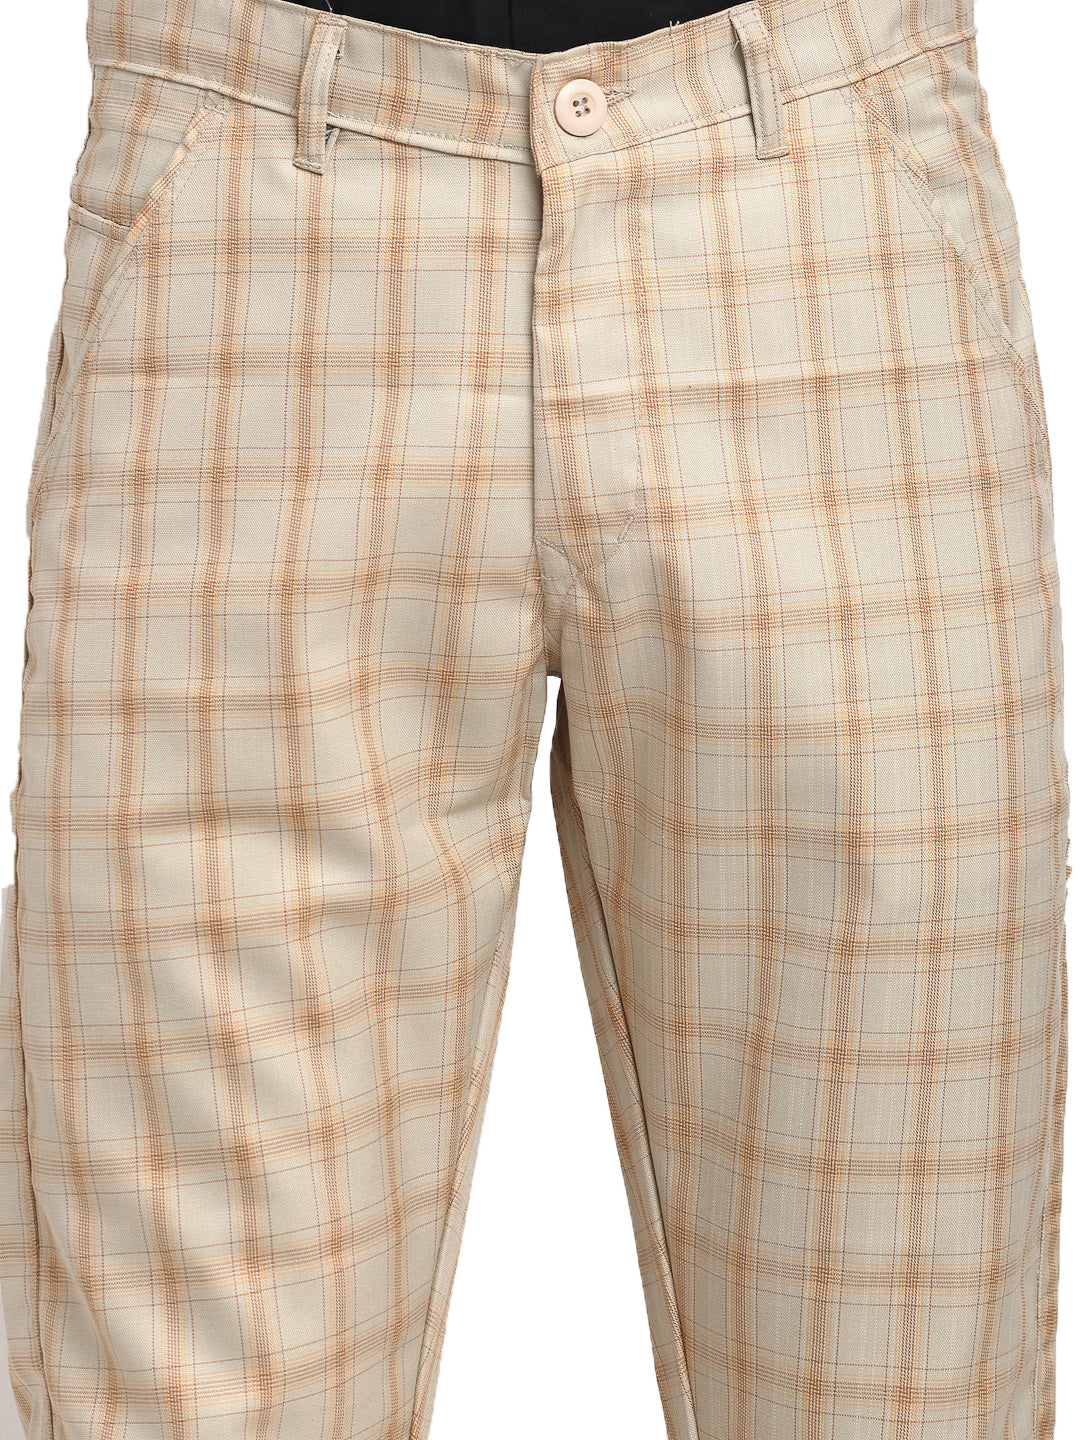 Men's Cream Cotton Checked Formal Trousers ( FGP 267Cream ) - Jainish